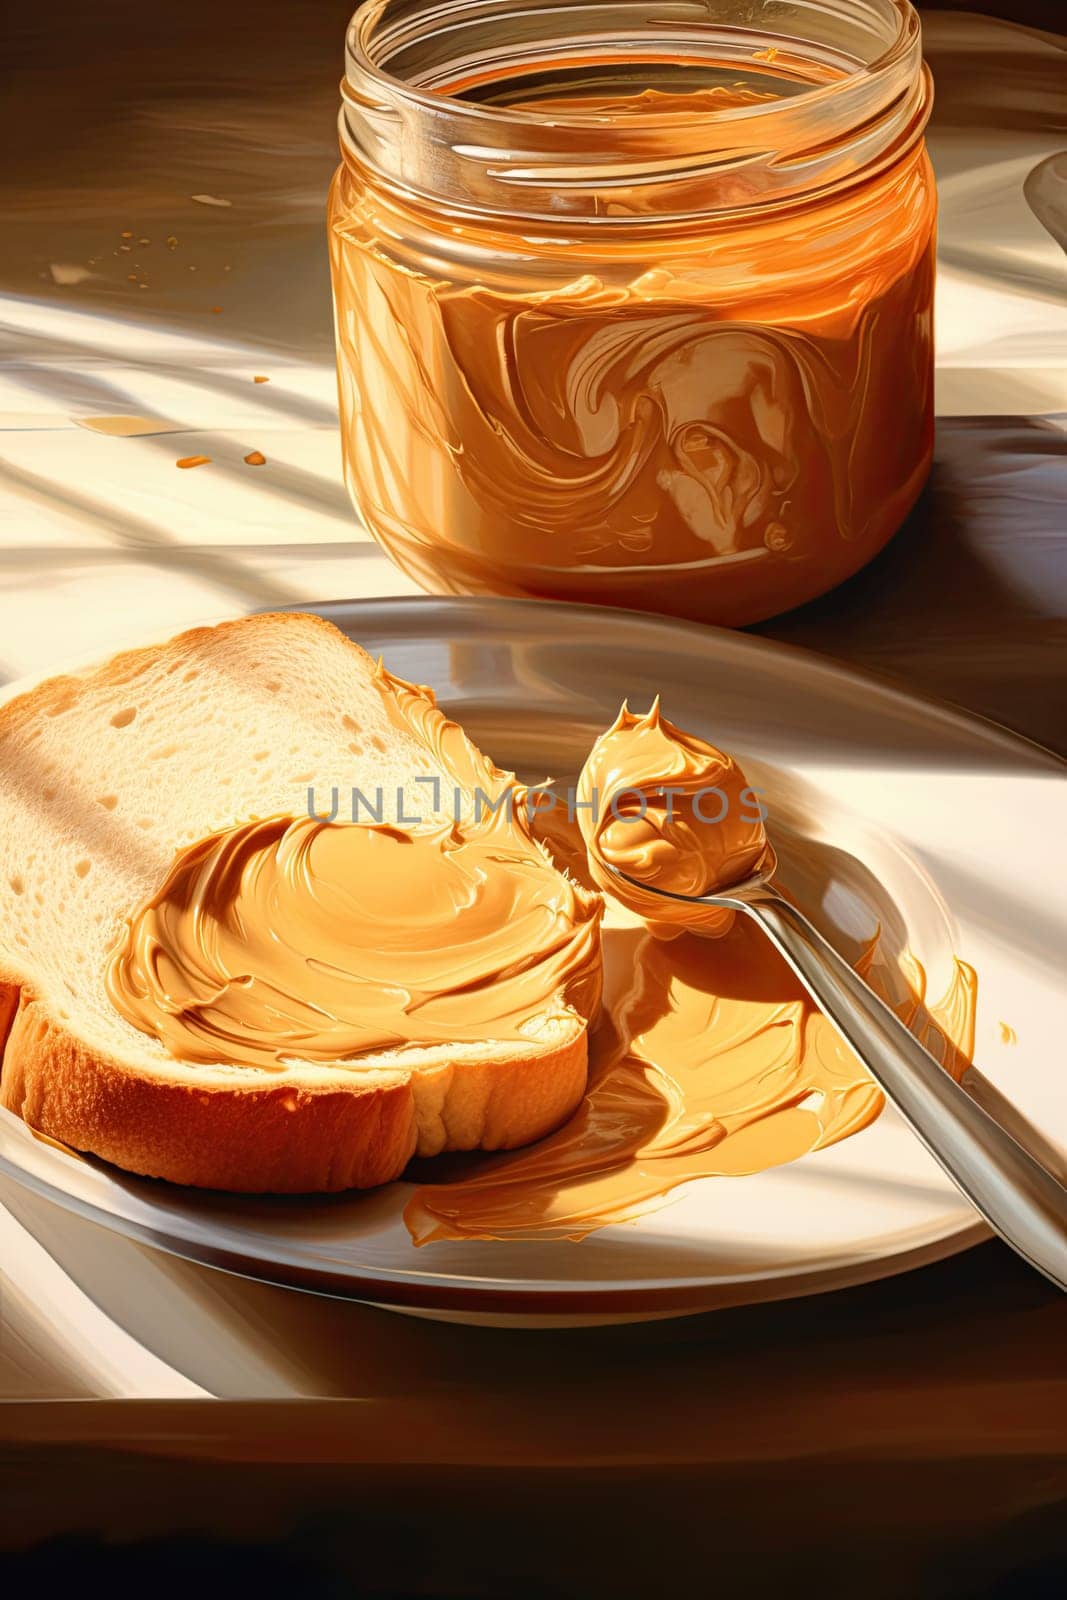 Peanut butter in spoon near creamy peanut paste in open glass jar, slice of peanut butter bread. Healthy breakfast.